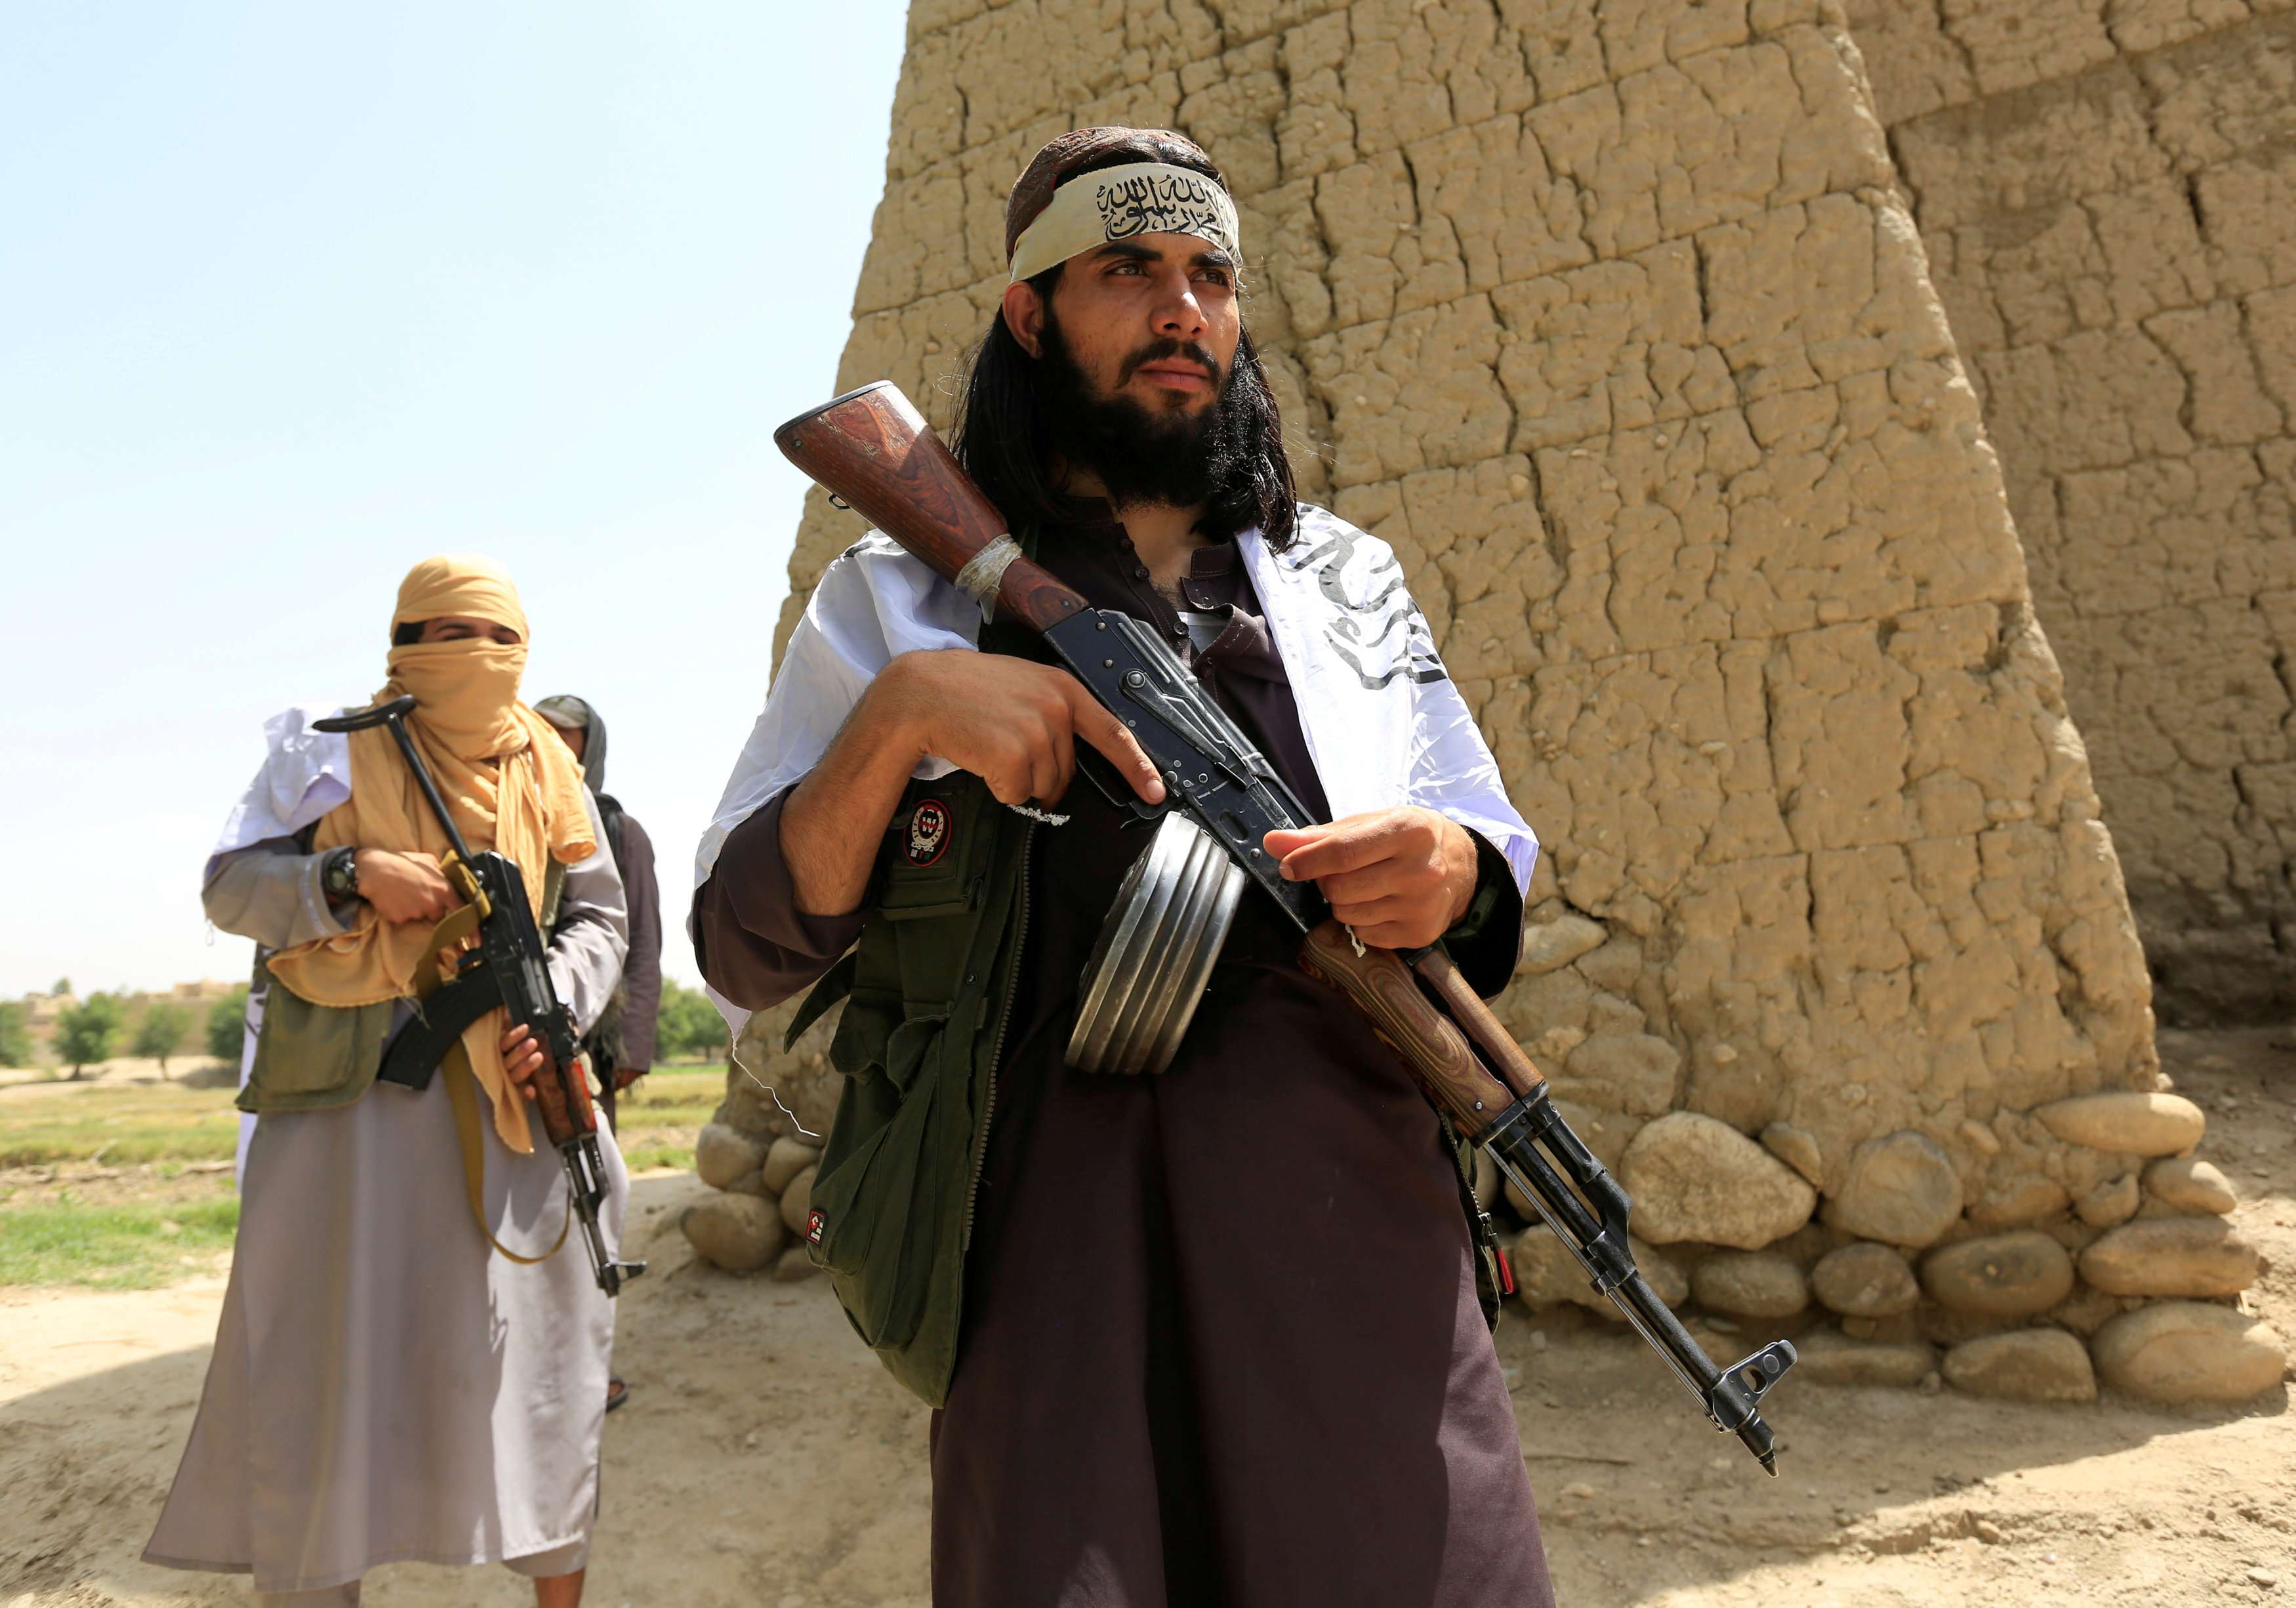 طالبان: تغيرنا، ونشجع على حقوق النساء في اطار الشريعة